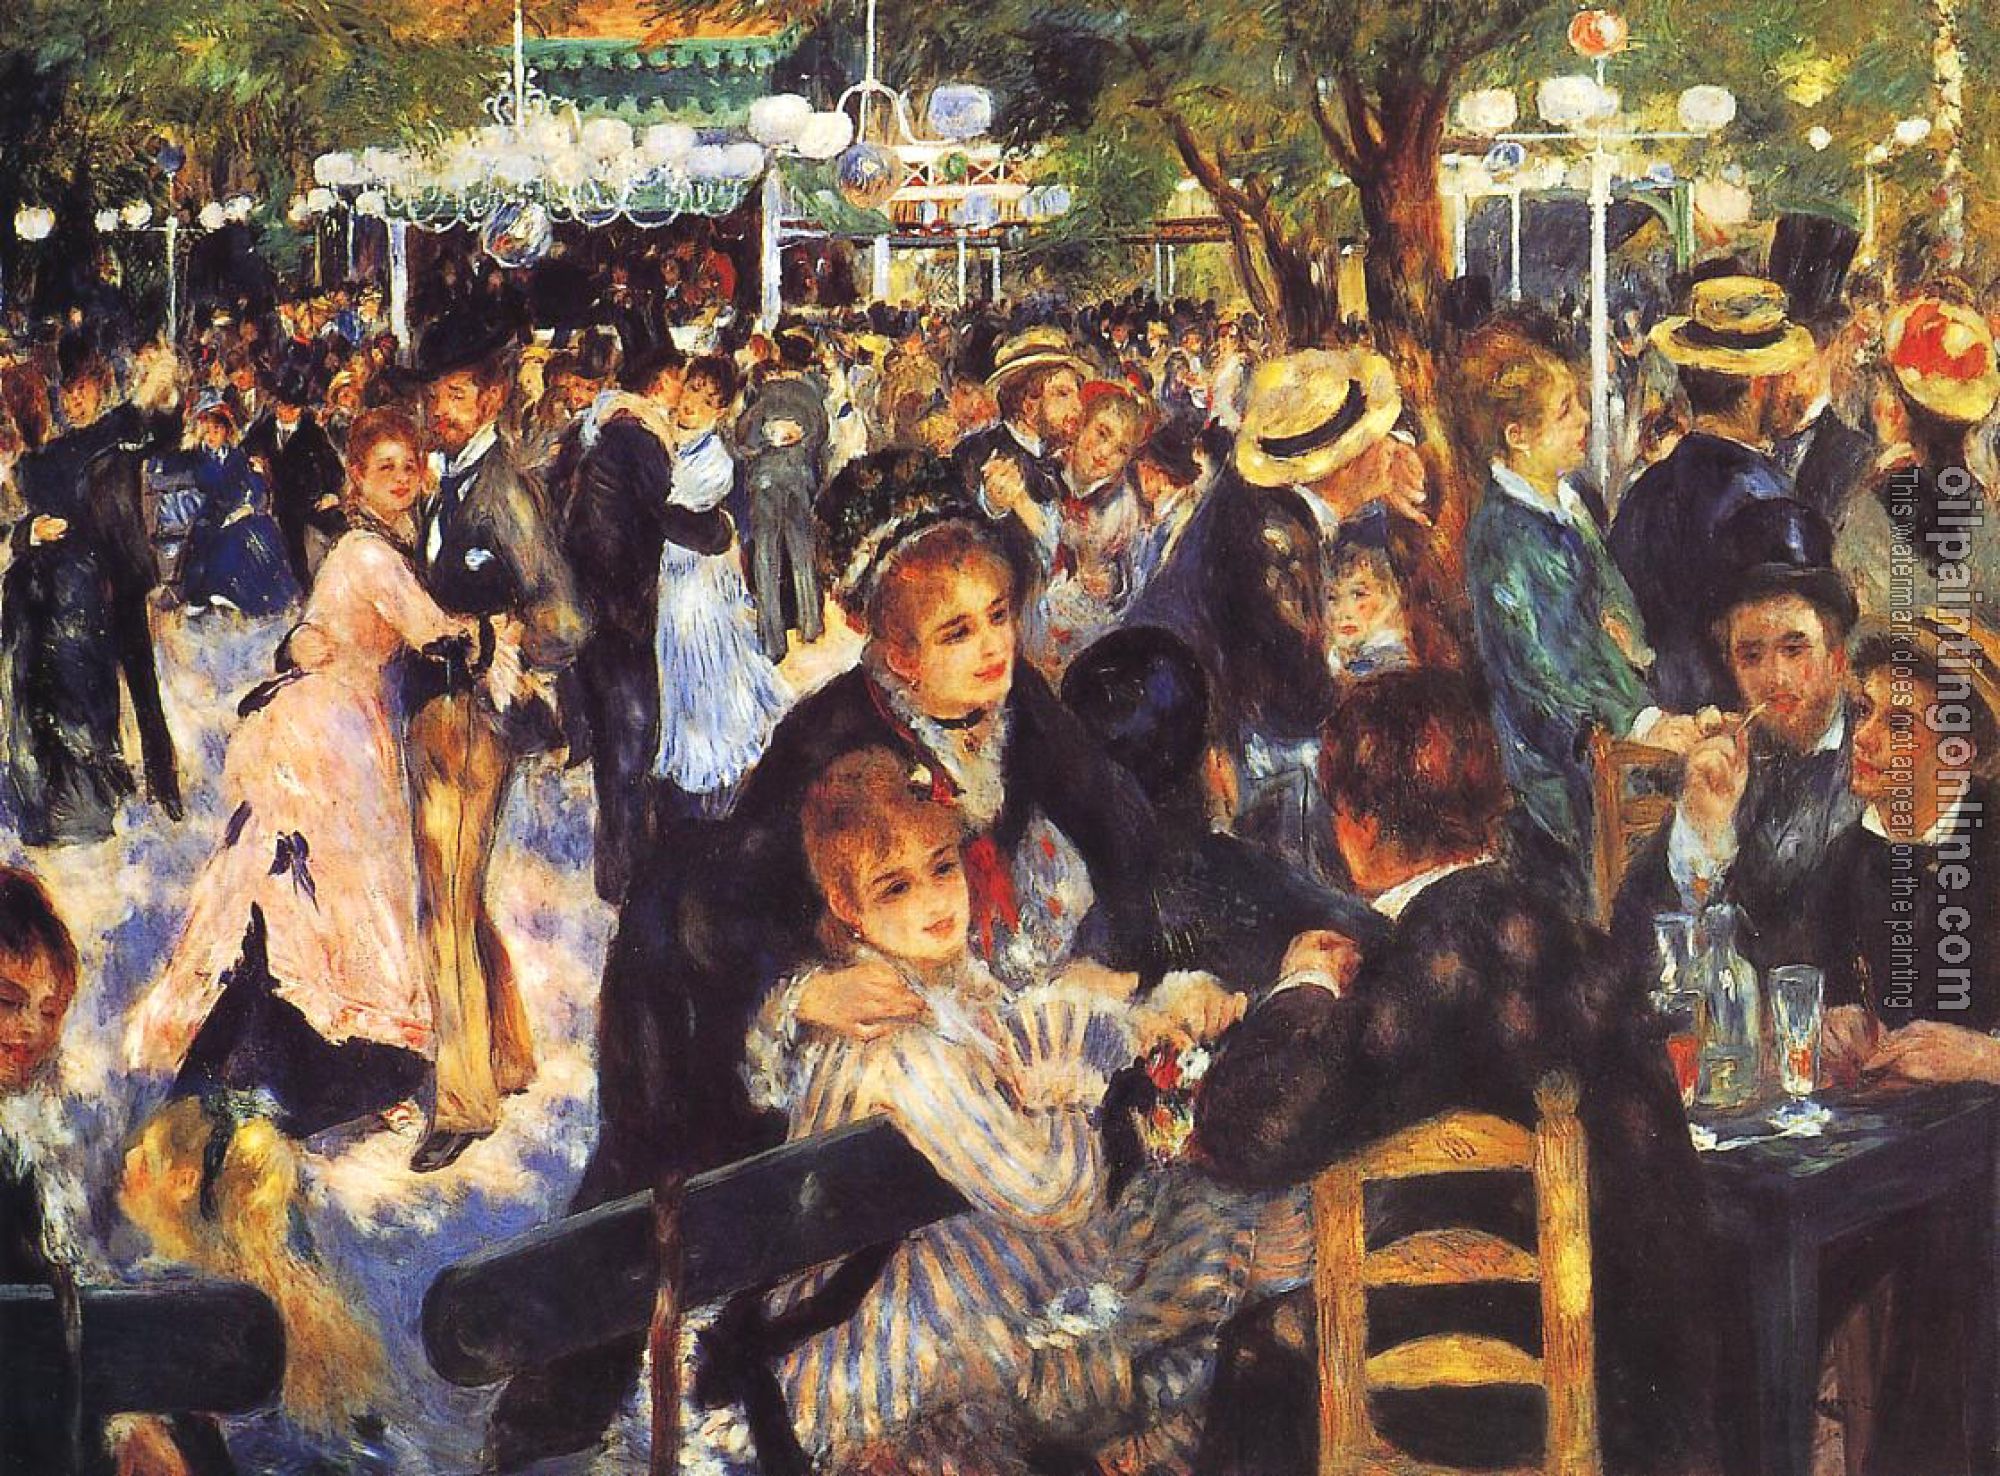 Renoir, Pierre Auguste - The Ball at the Moulin de la Galette